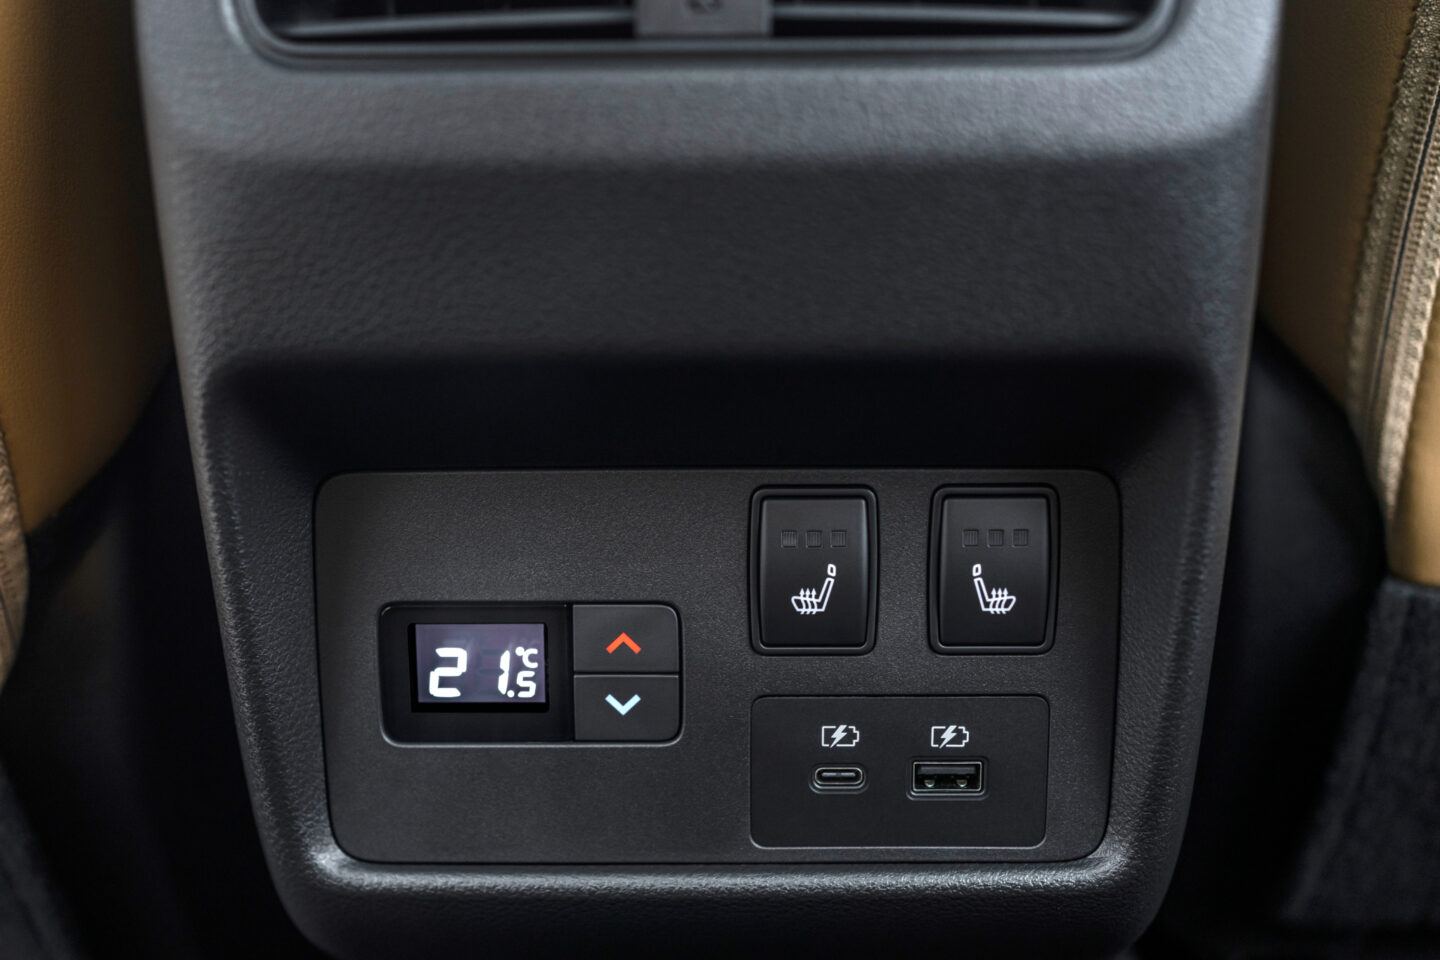 Nissan X-Trail pormenor comandos climatização traseiros